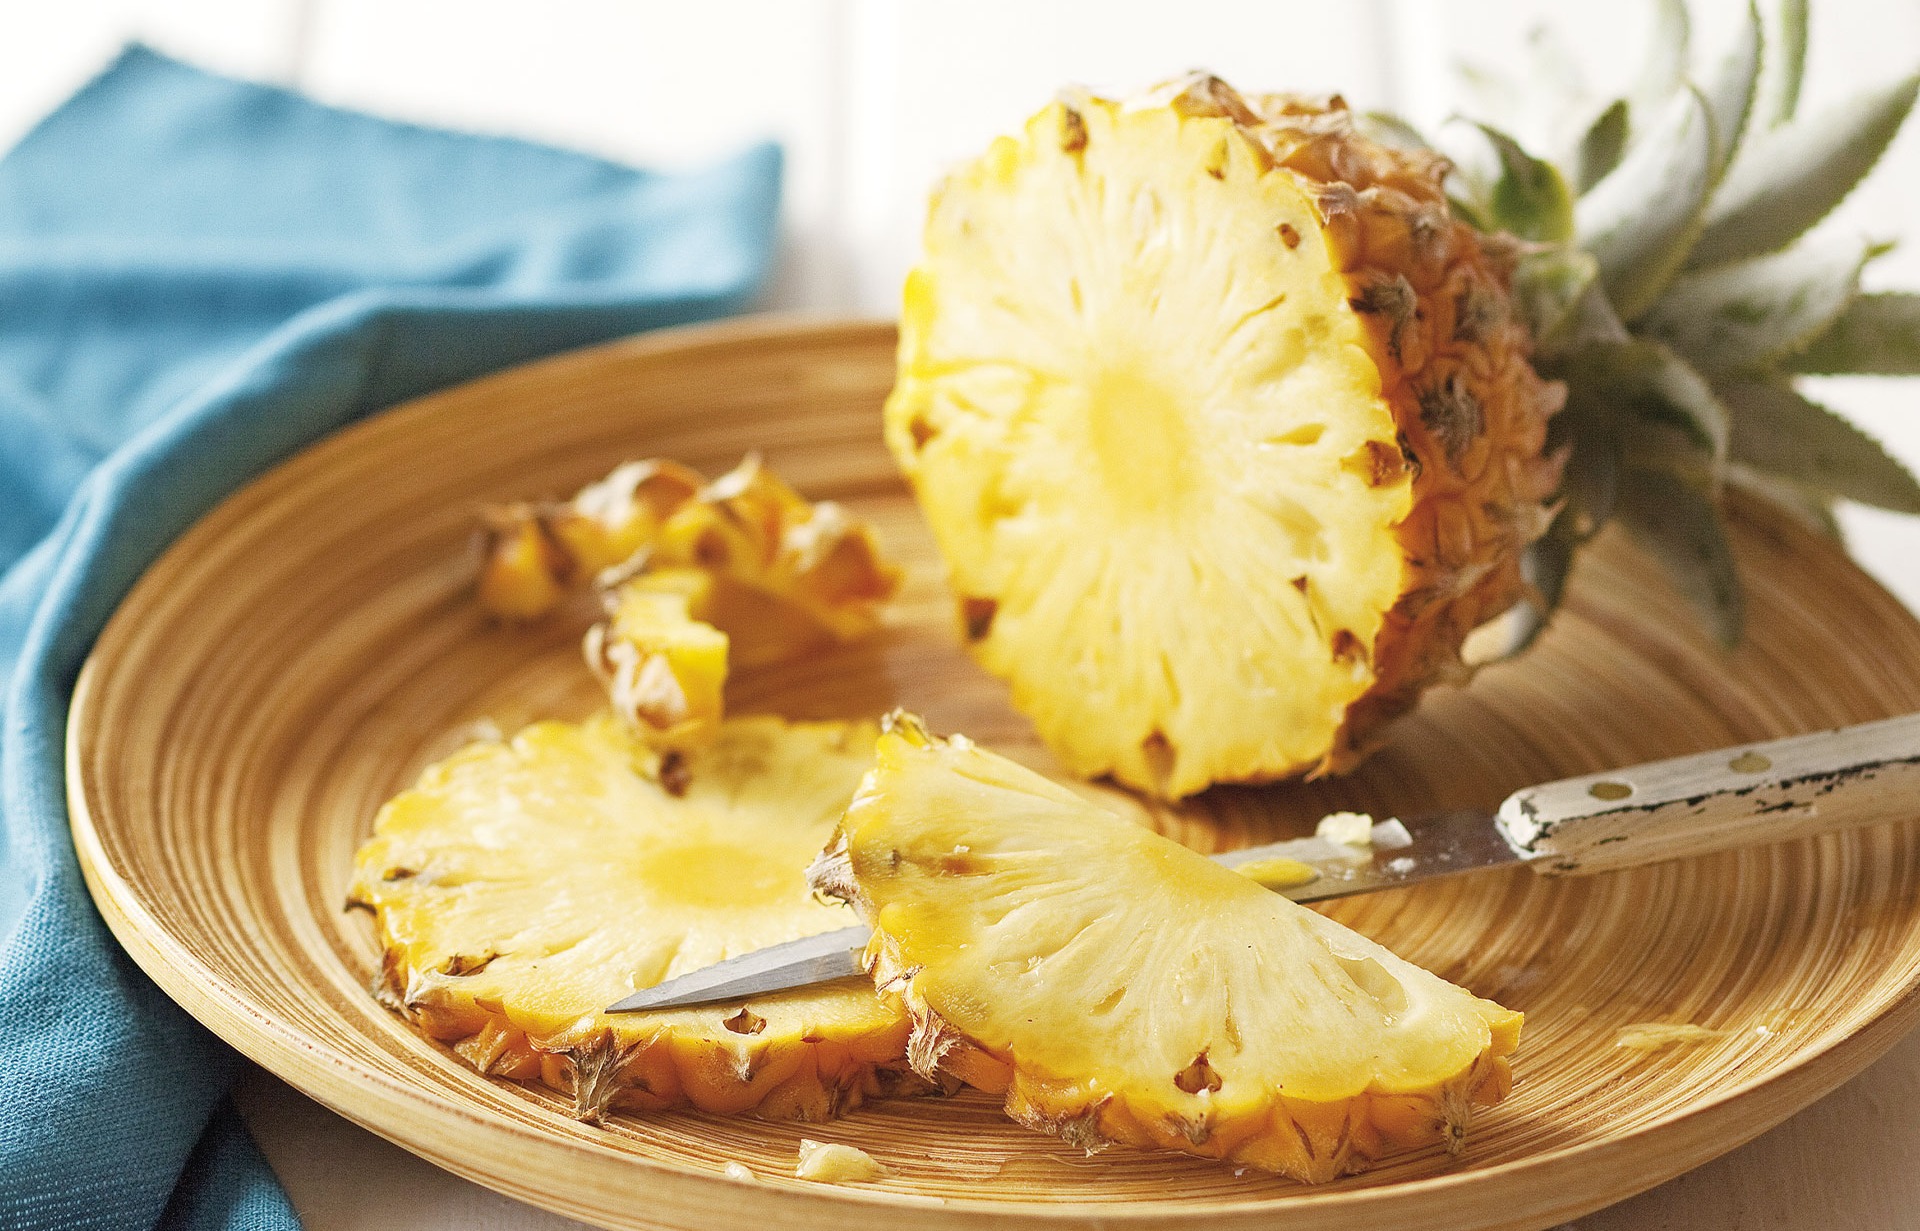 روش پوست کندن آناناس